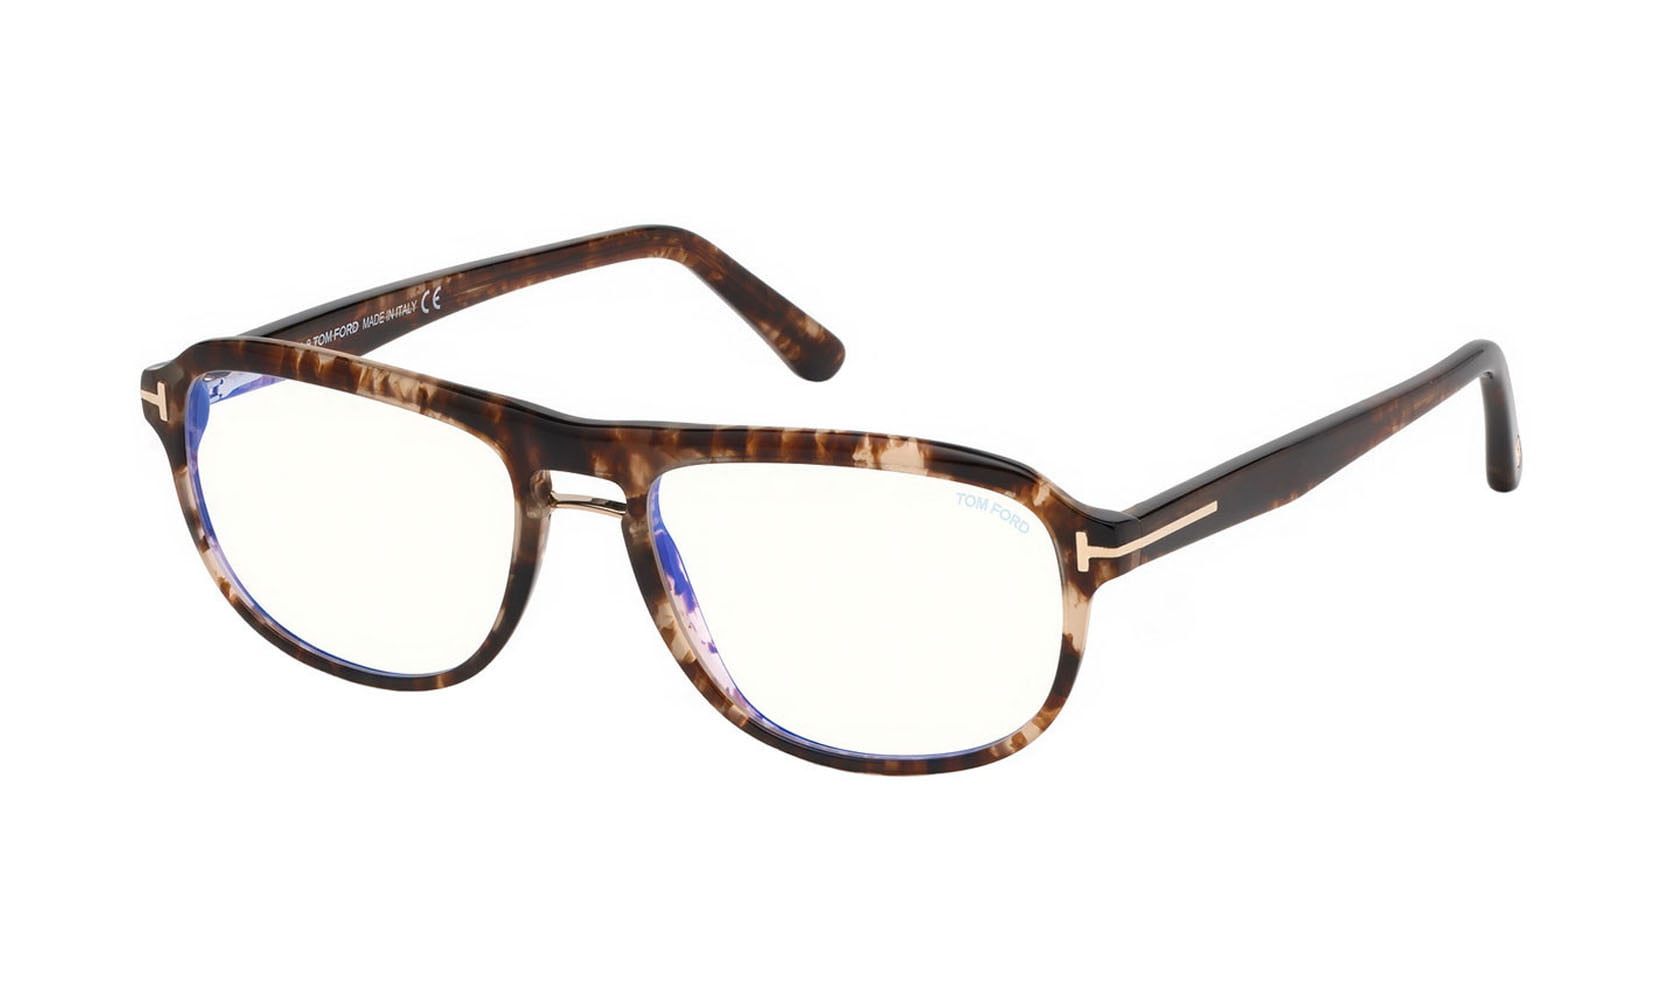 Tom Ford Womens FT5069 Eyeglasses Black/Gold